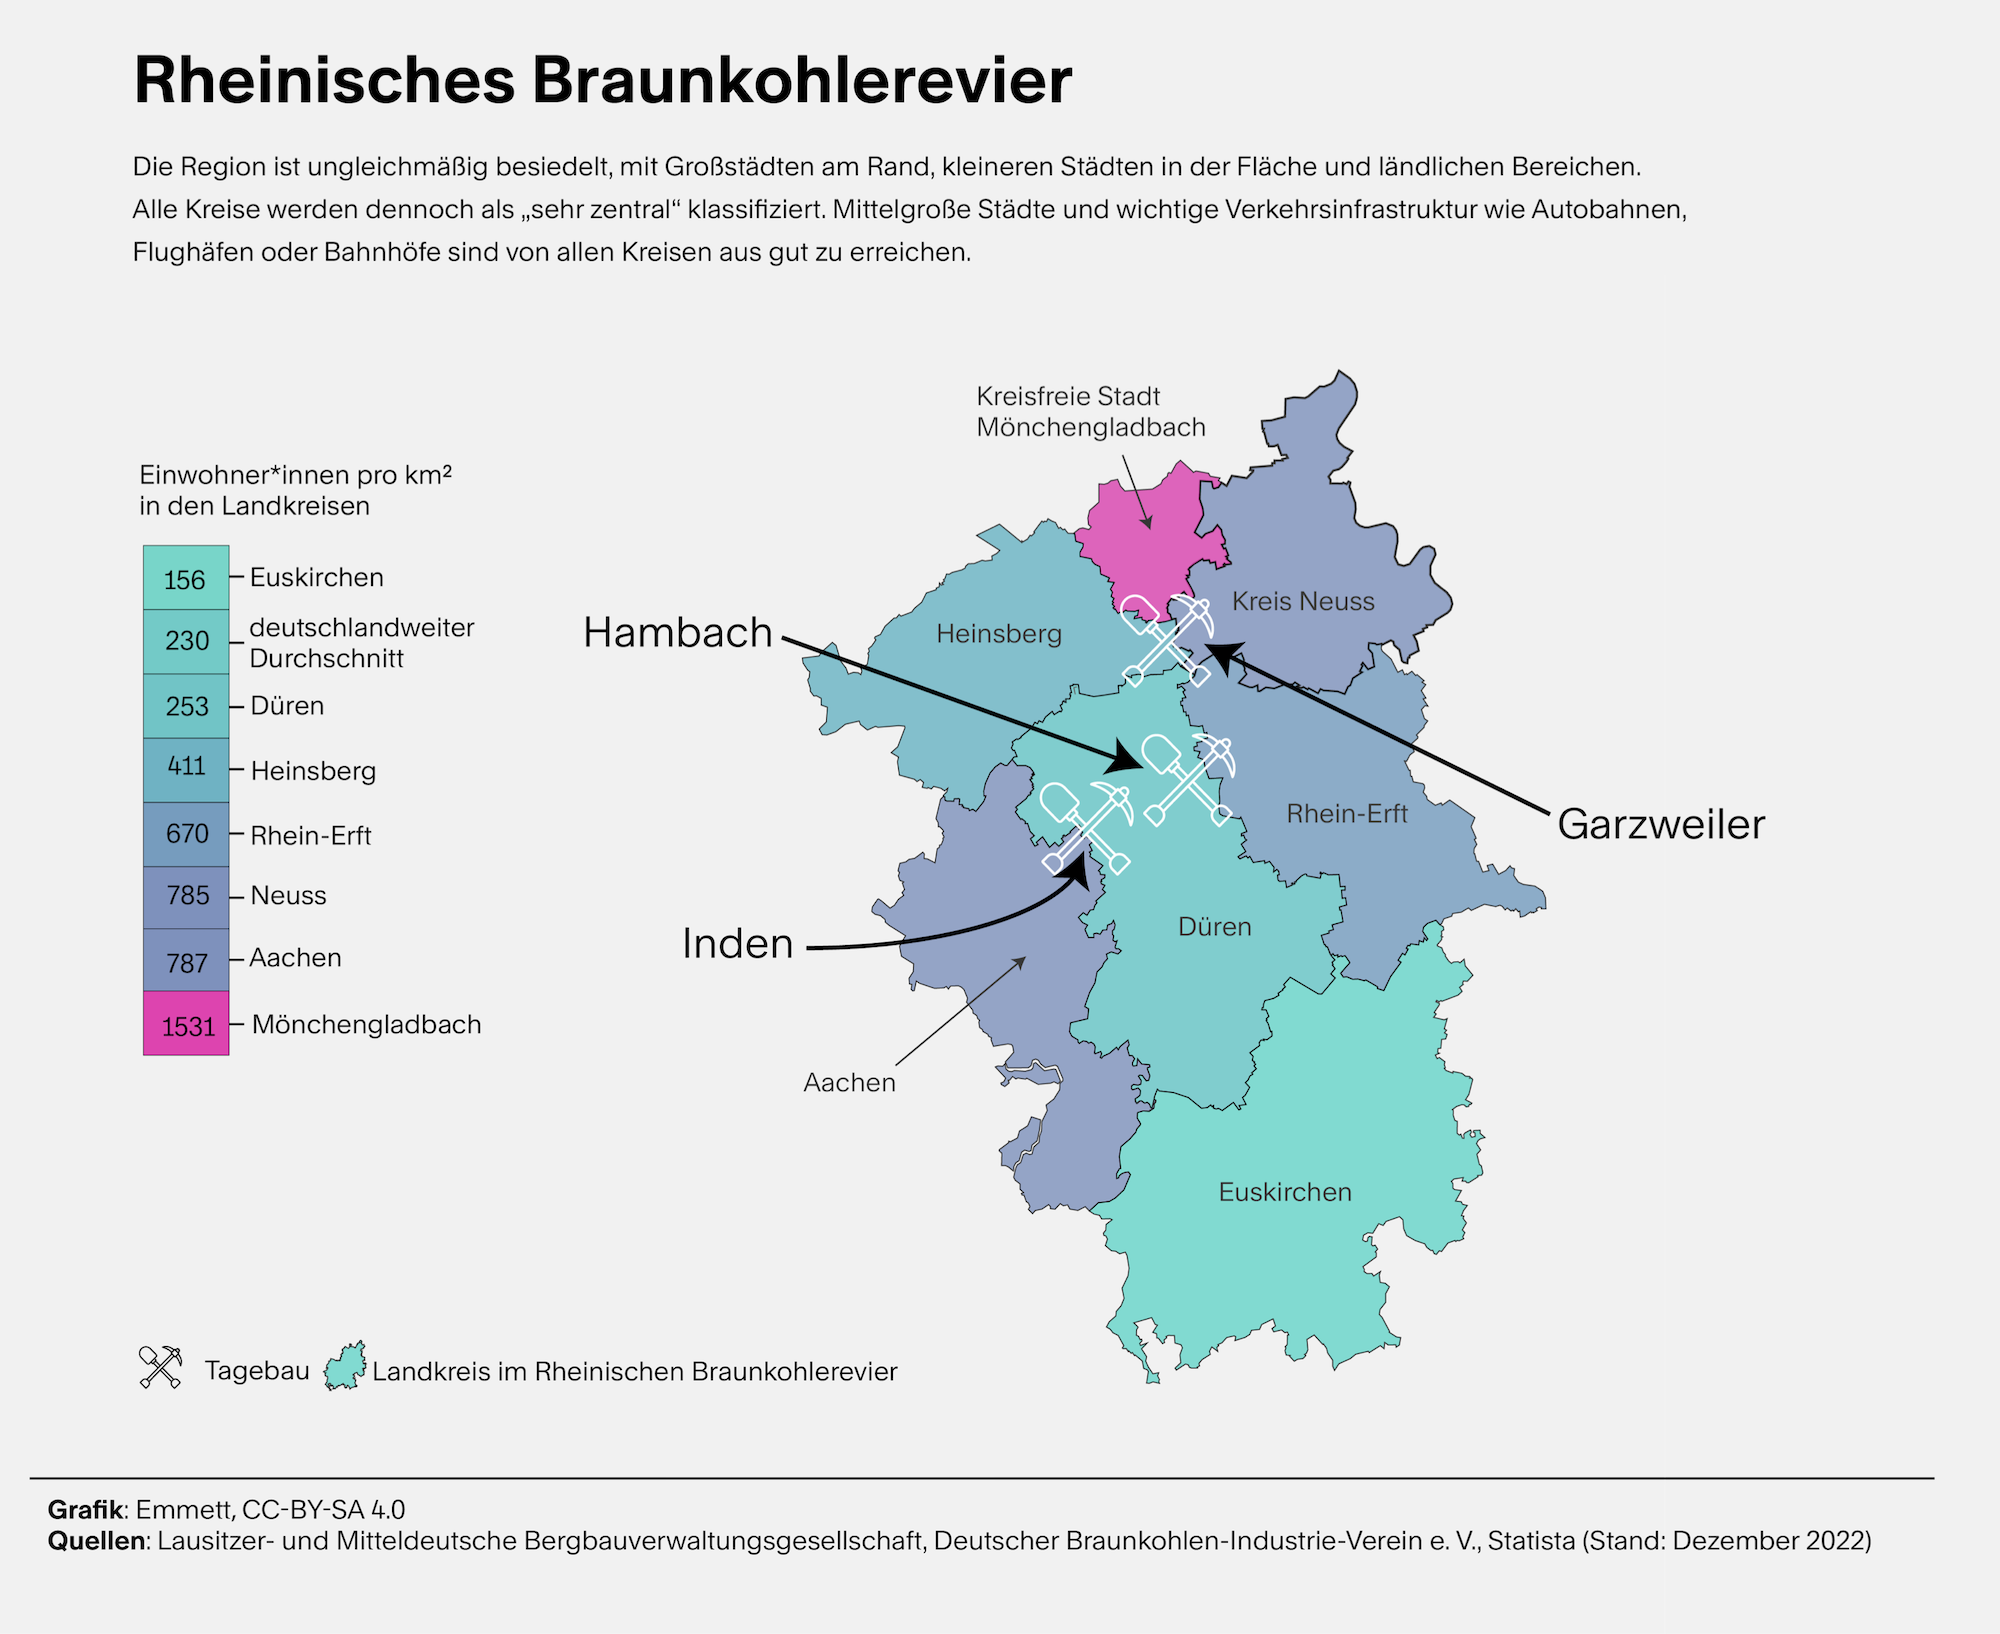 Grafik. Eine Karte zeigt das Rheinische Braunkohlerevier, aufgeteilt in mehrere Regionen, die farbig unterschiedlich ausgemalt sind, entsprechend der Zahl der Einwohnerinnen pro Quadratkilometer